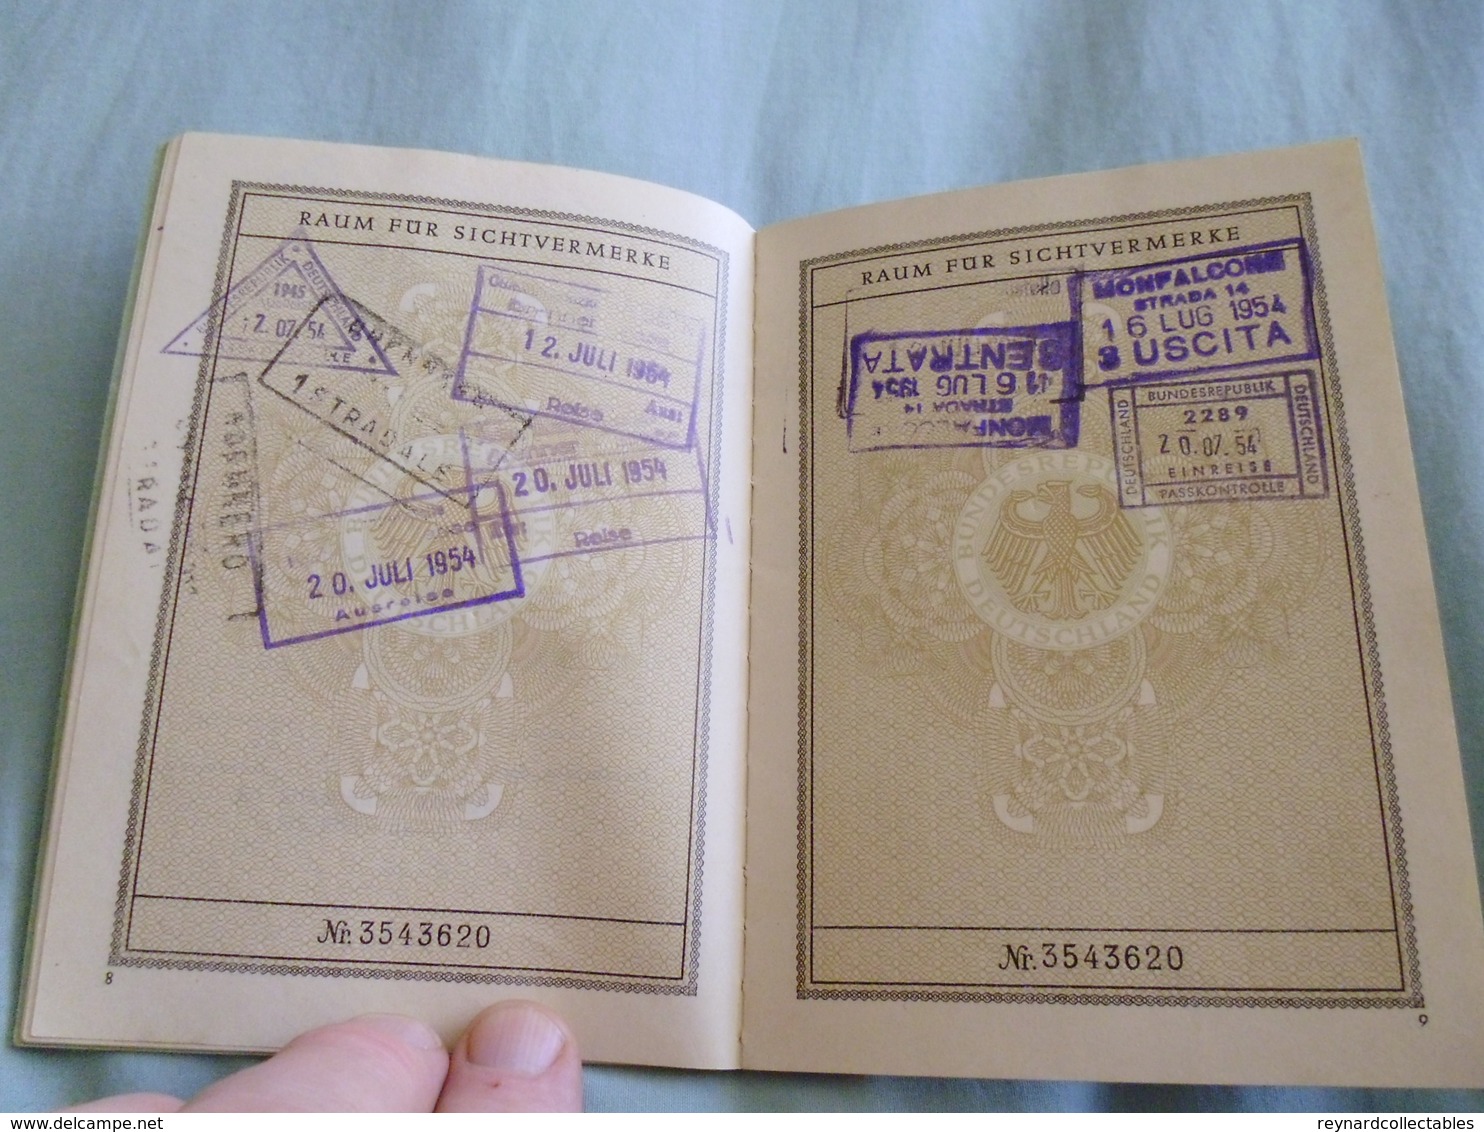 1952 West German Reisepass Passport Heidenheim, French Zone of Austria & Italy handstamps? Fiscals